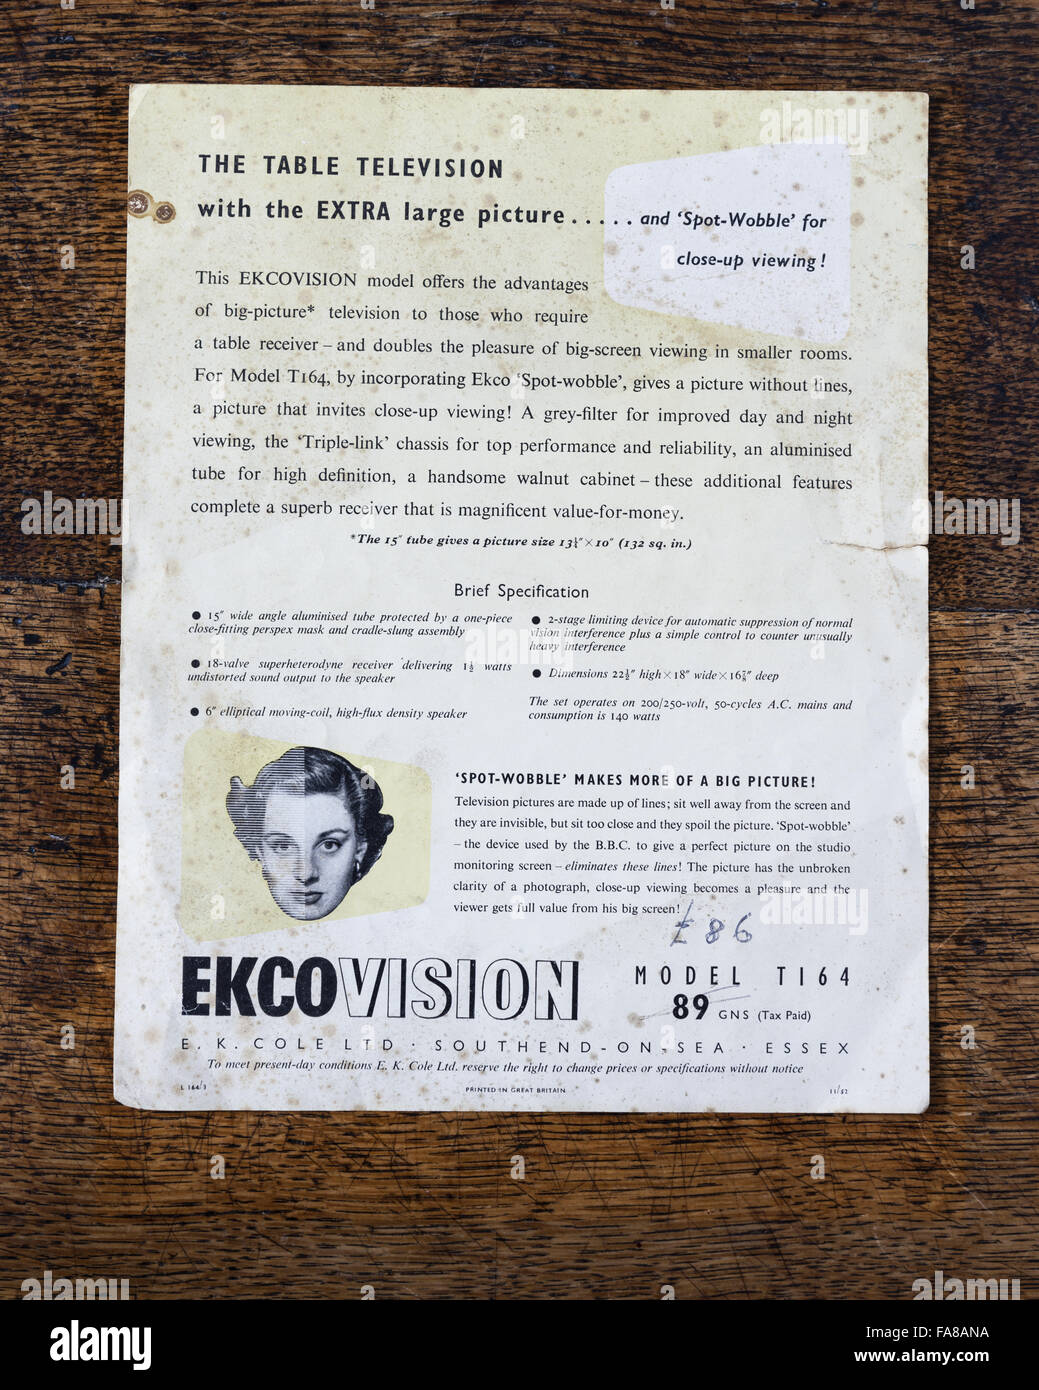 Broschüre für eine TV-Ekcovision "Spot-wackeln" festgelegt, der 1950er Jahre aus den Sammlungen bei Nymans, West Sussex. Spot-Wobble TV-Bildschirm-Technologie produziert eine glattere, klarere Bild. Stockfoto